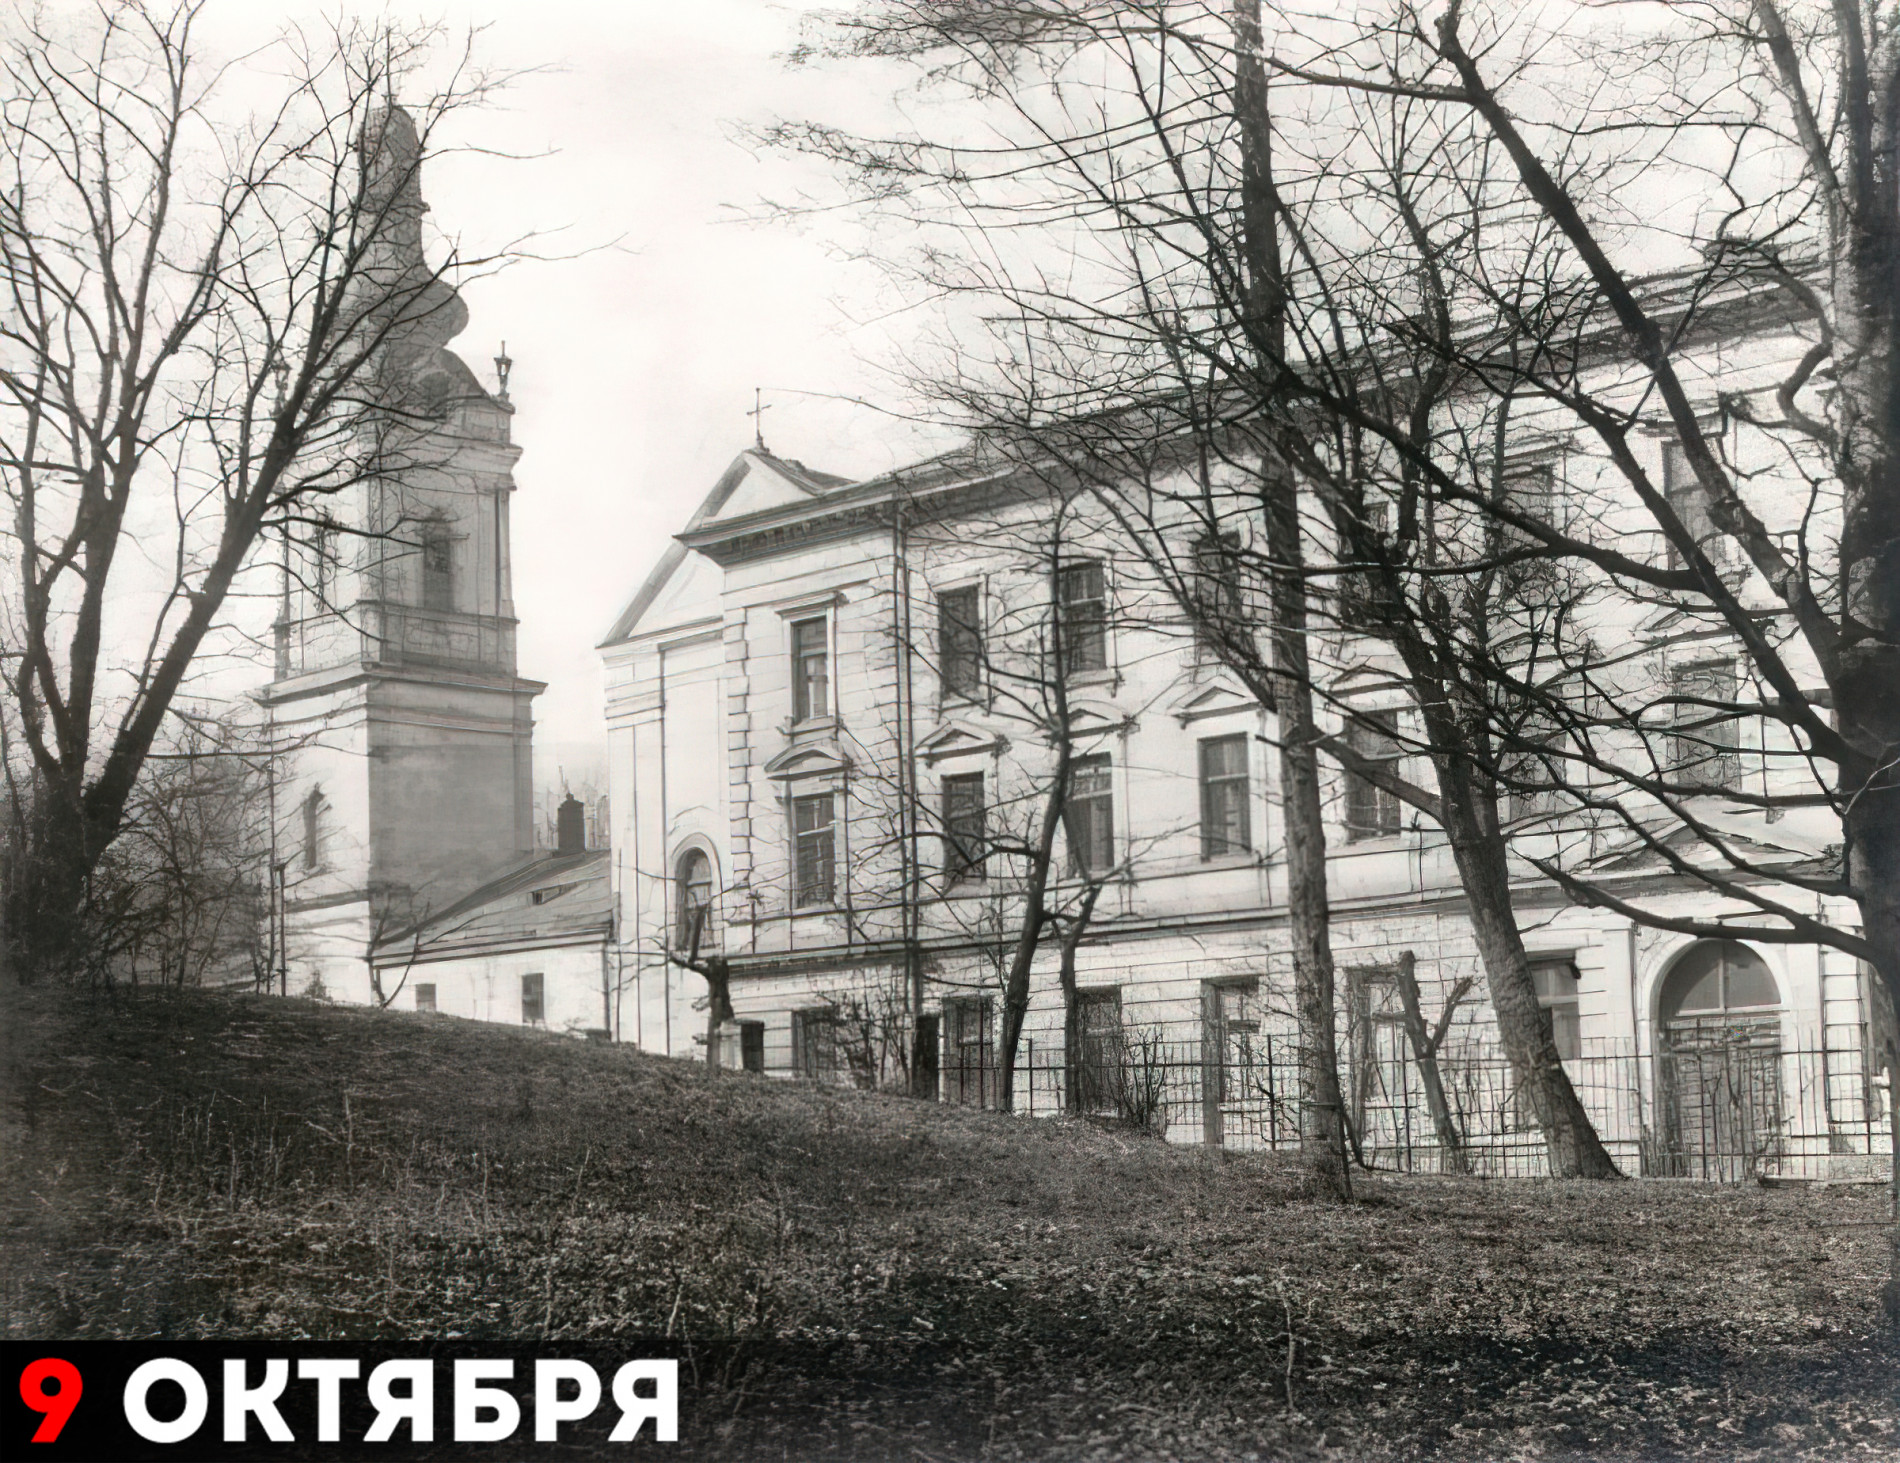 Украинский католический университет во Львове